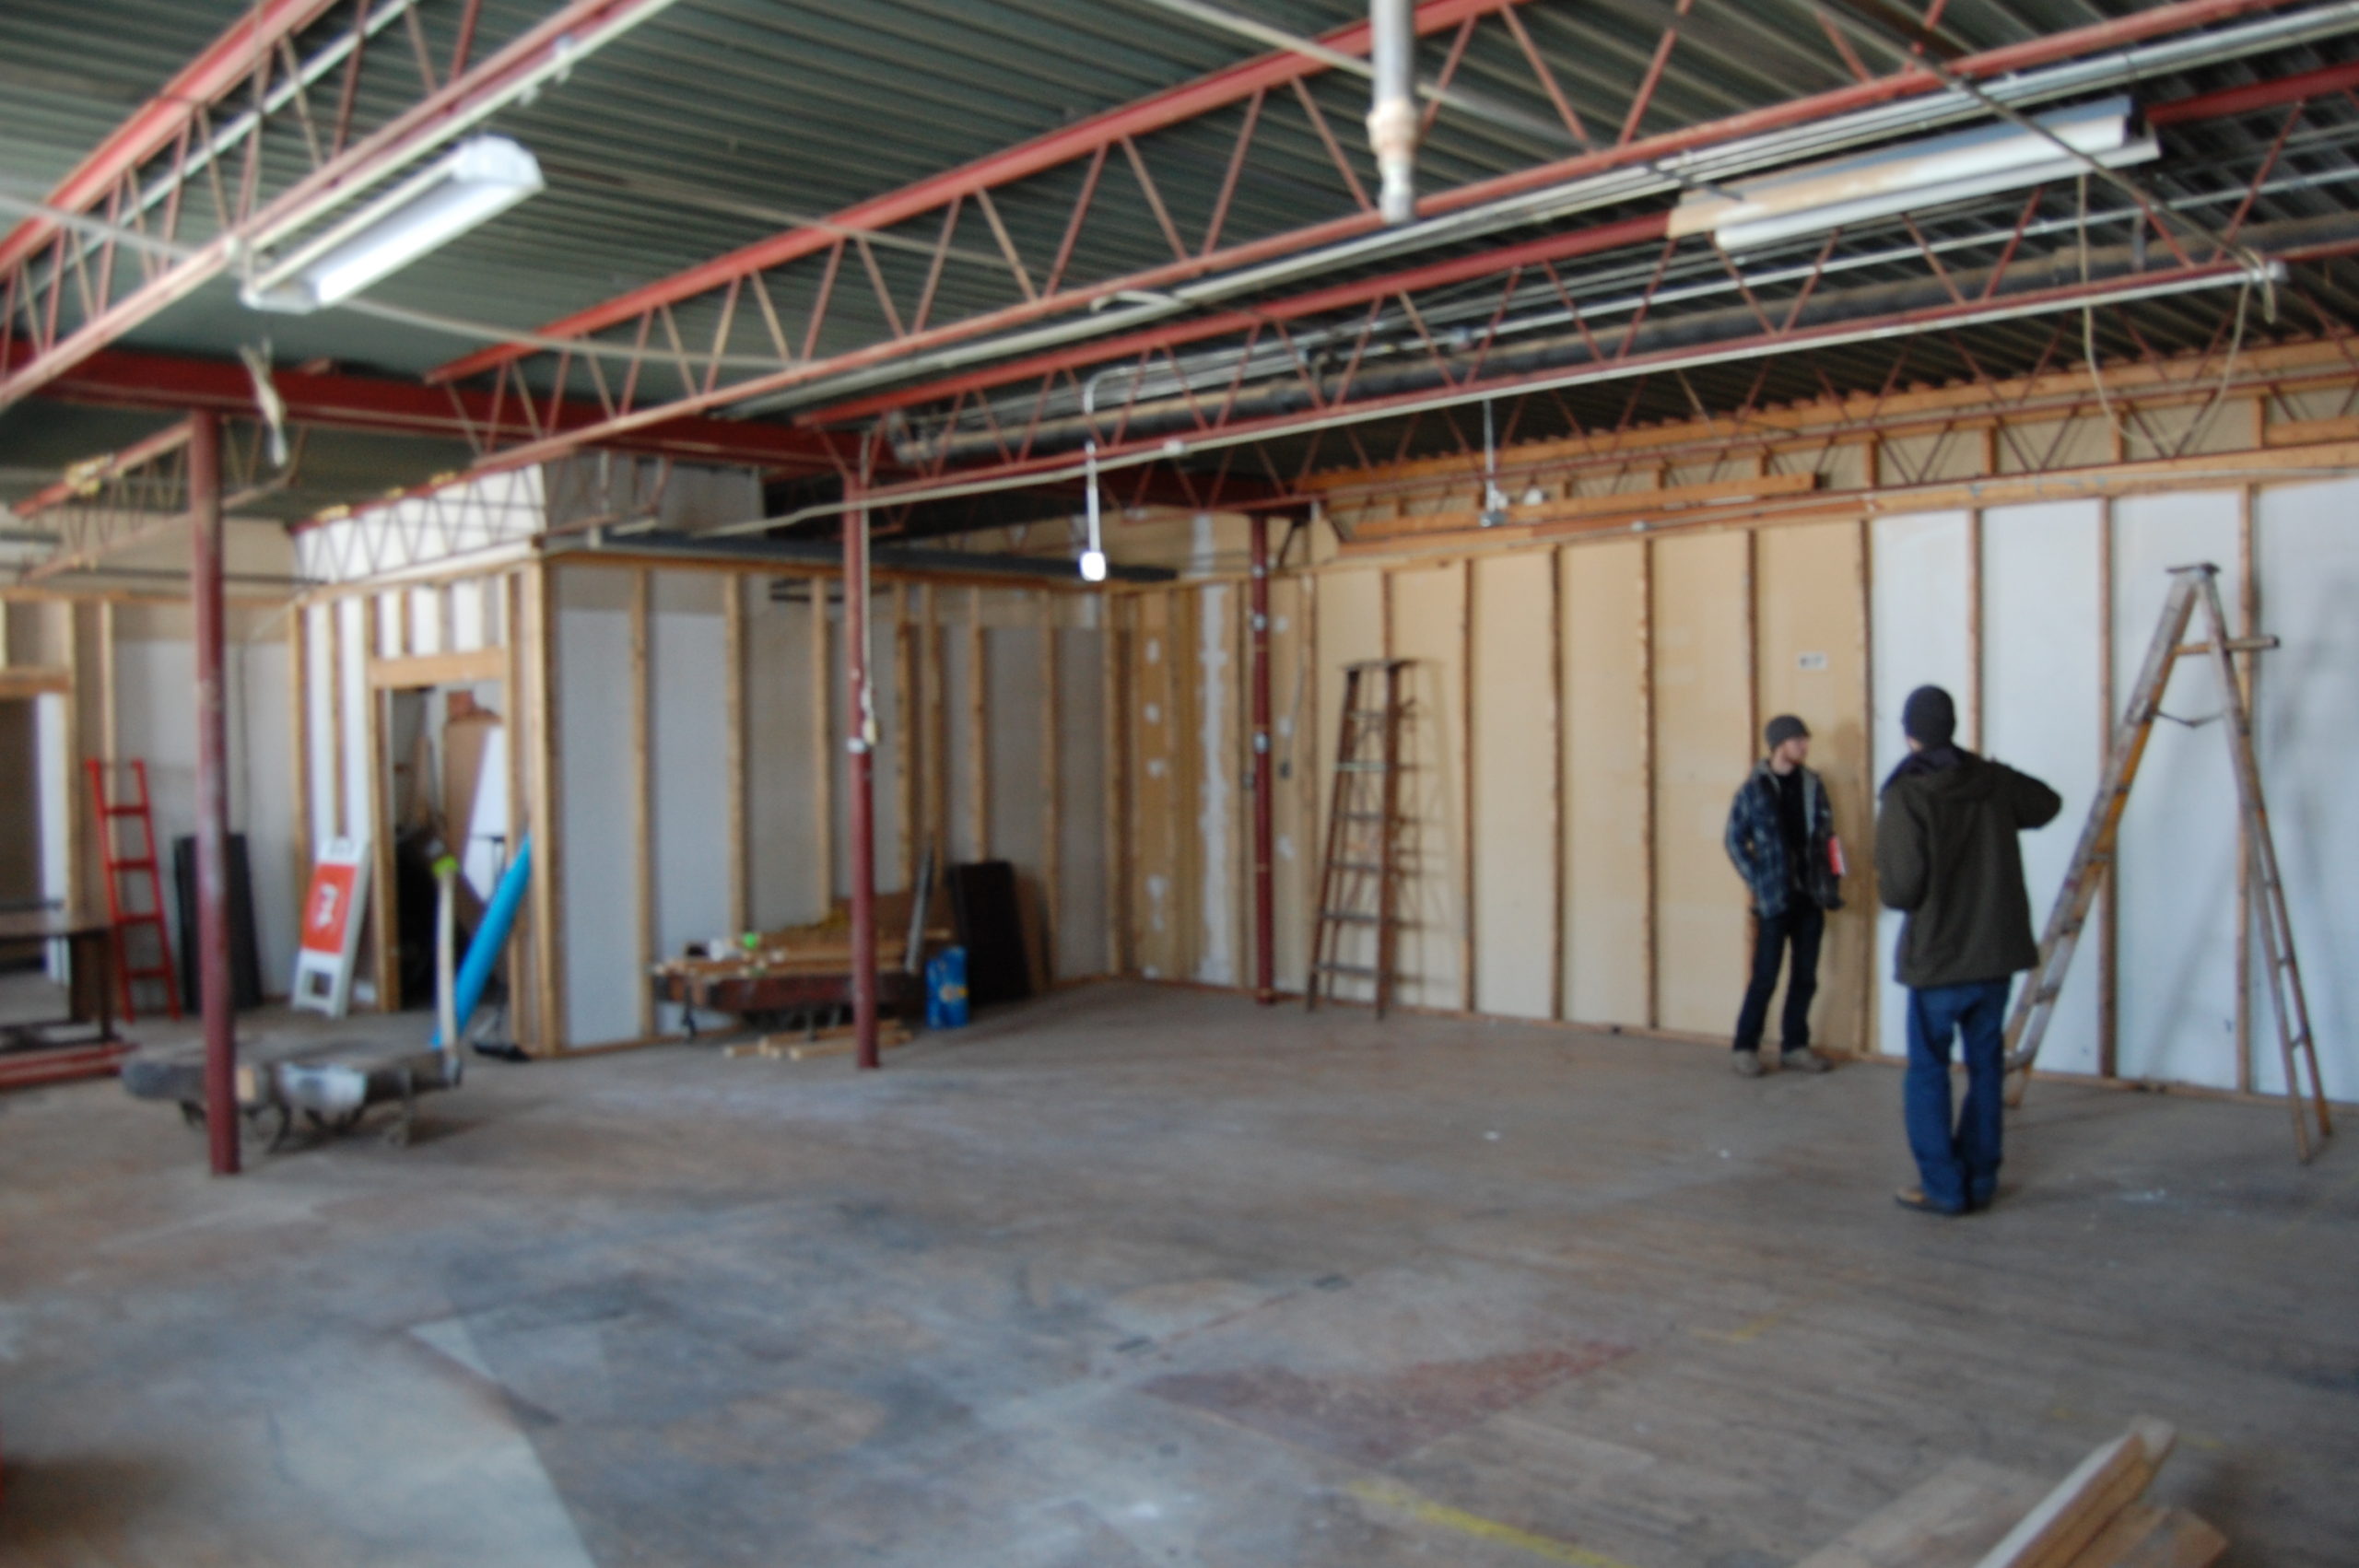 People building walls in an open room. Dinderbeck Studios.